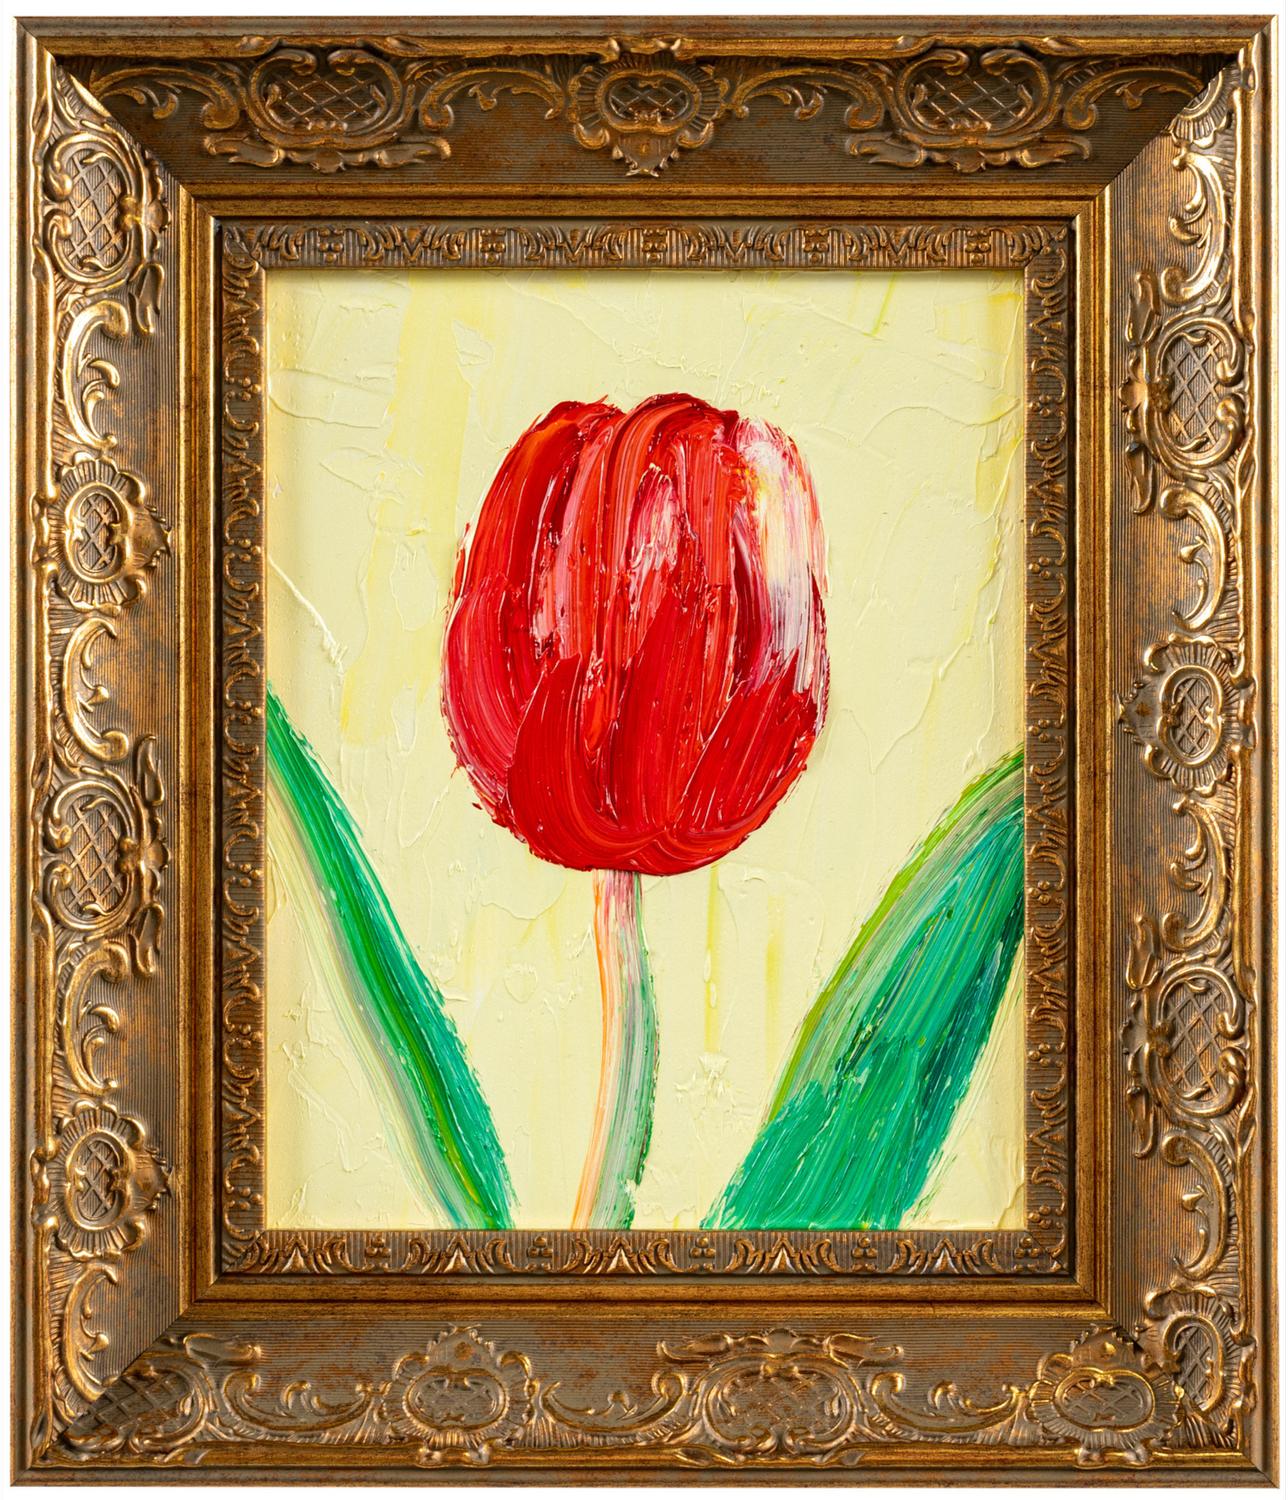 Das Gemälde "Vienna" des renommierten Künstlers Hunt Slonem ist ein 10x8 großes, farbenfrohes Tulpen-Ölgemälde auf Holzplatte in Rot mit grünen Blättern und gelbem Hintergrund.

*Gemälde ist gerahmt - Bitte beachten Sie, dass nicht alle Hunt Slonem